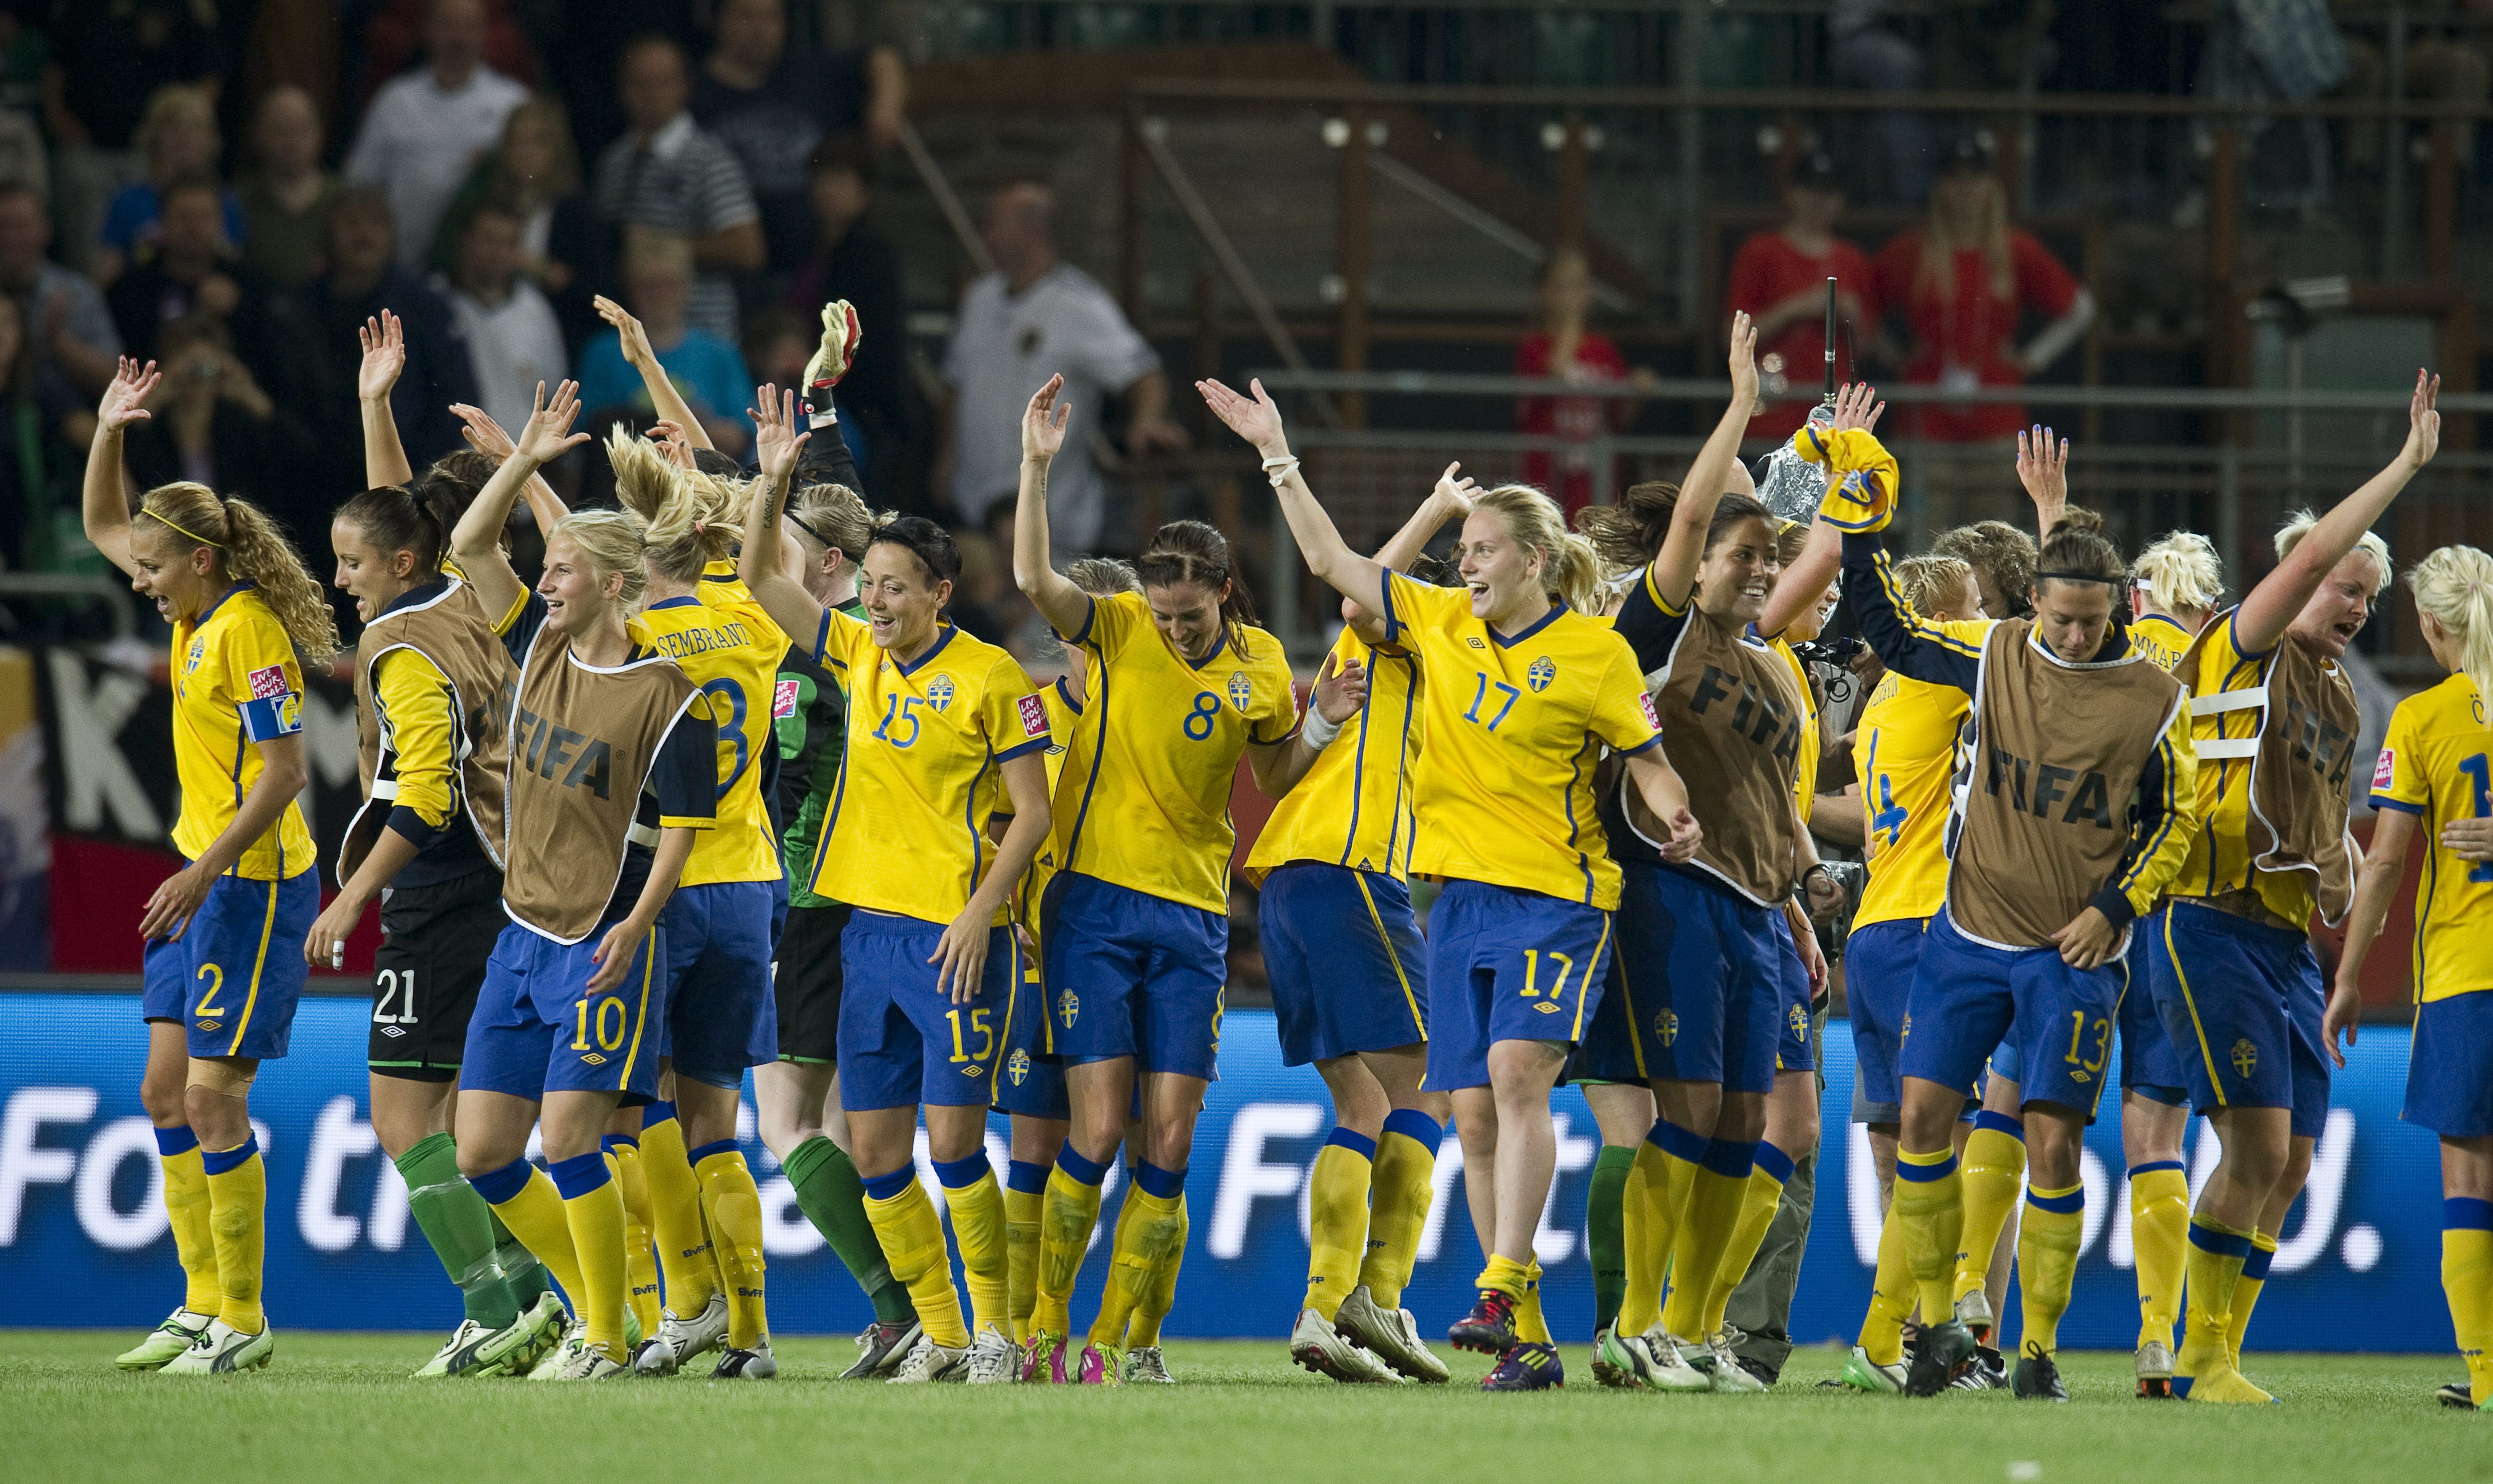 VM, Djurgården IF, Damlandslaget, Tyskland, Allsvenskan